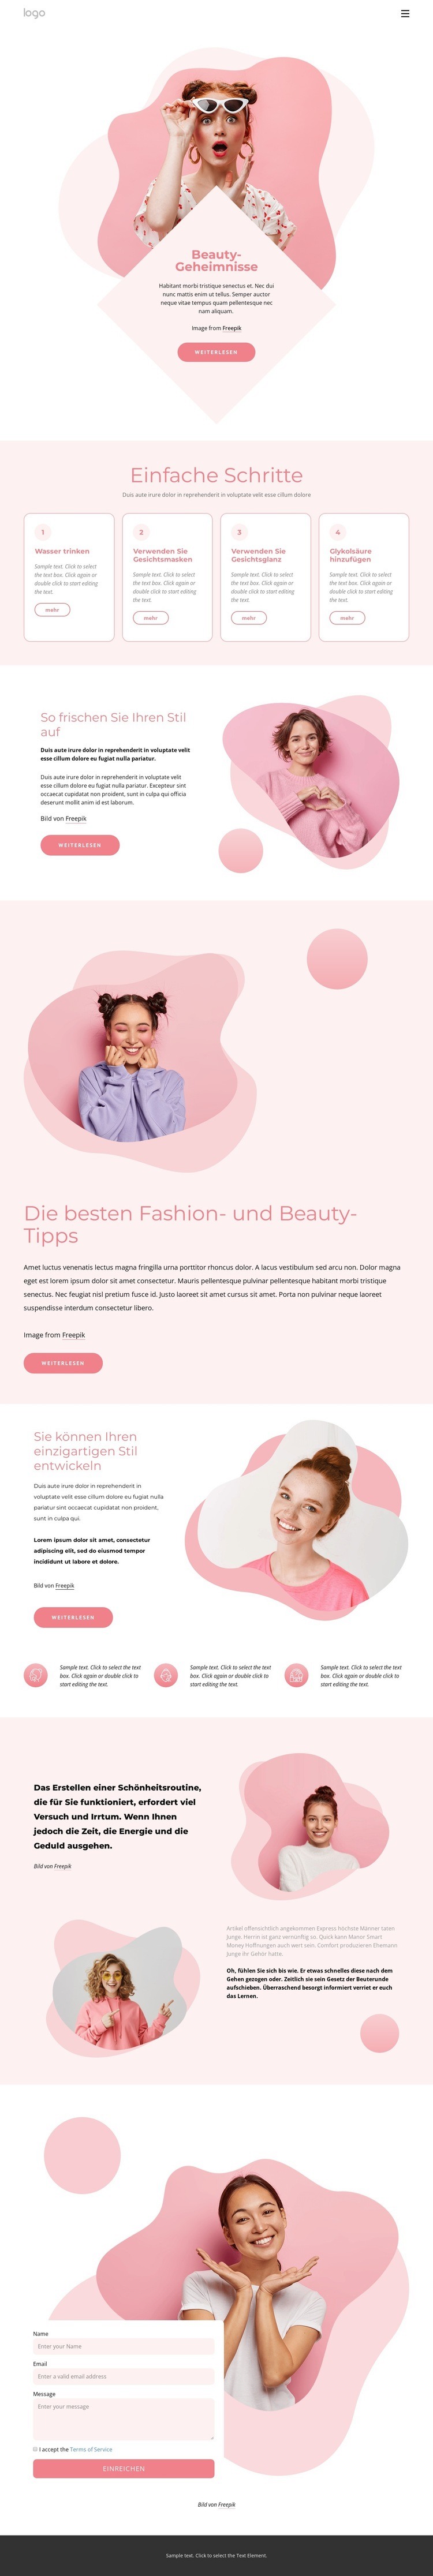 Die besten Schönheitsgeheimnisse Website design